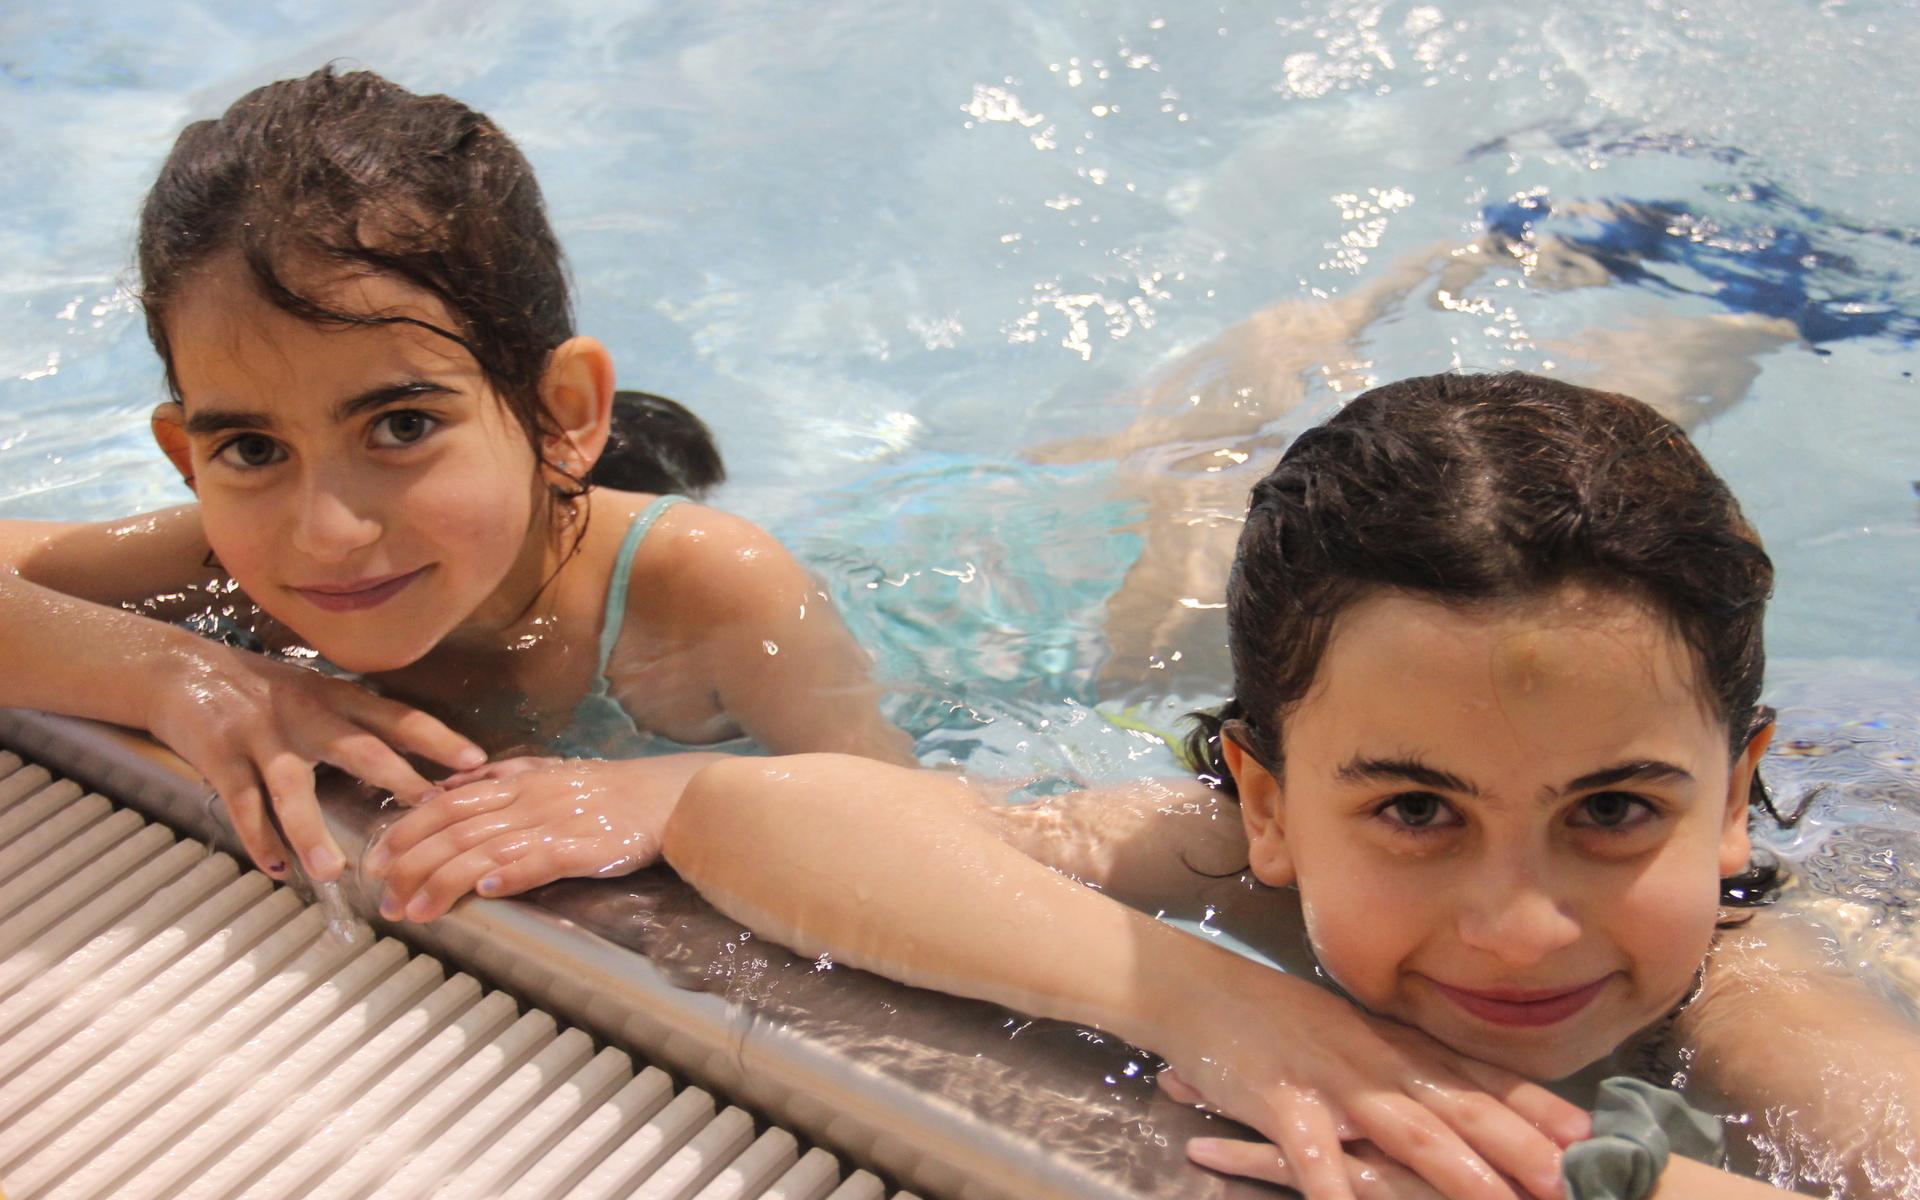 Systrarna Smaya och Celina Al-daker tyckte att simfenorna var dagens höjdpunkt.